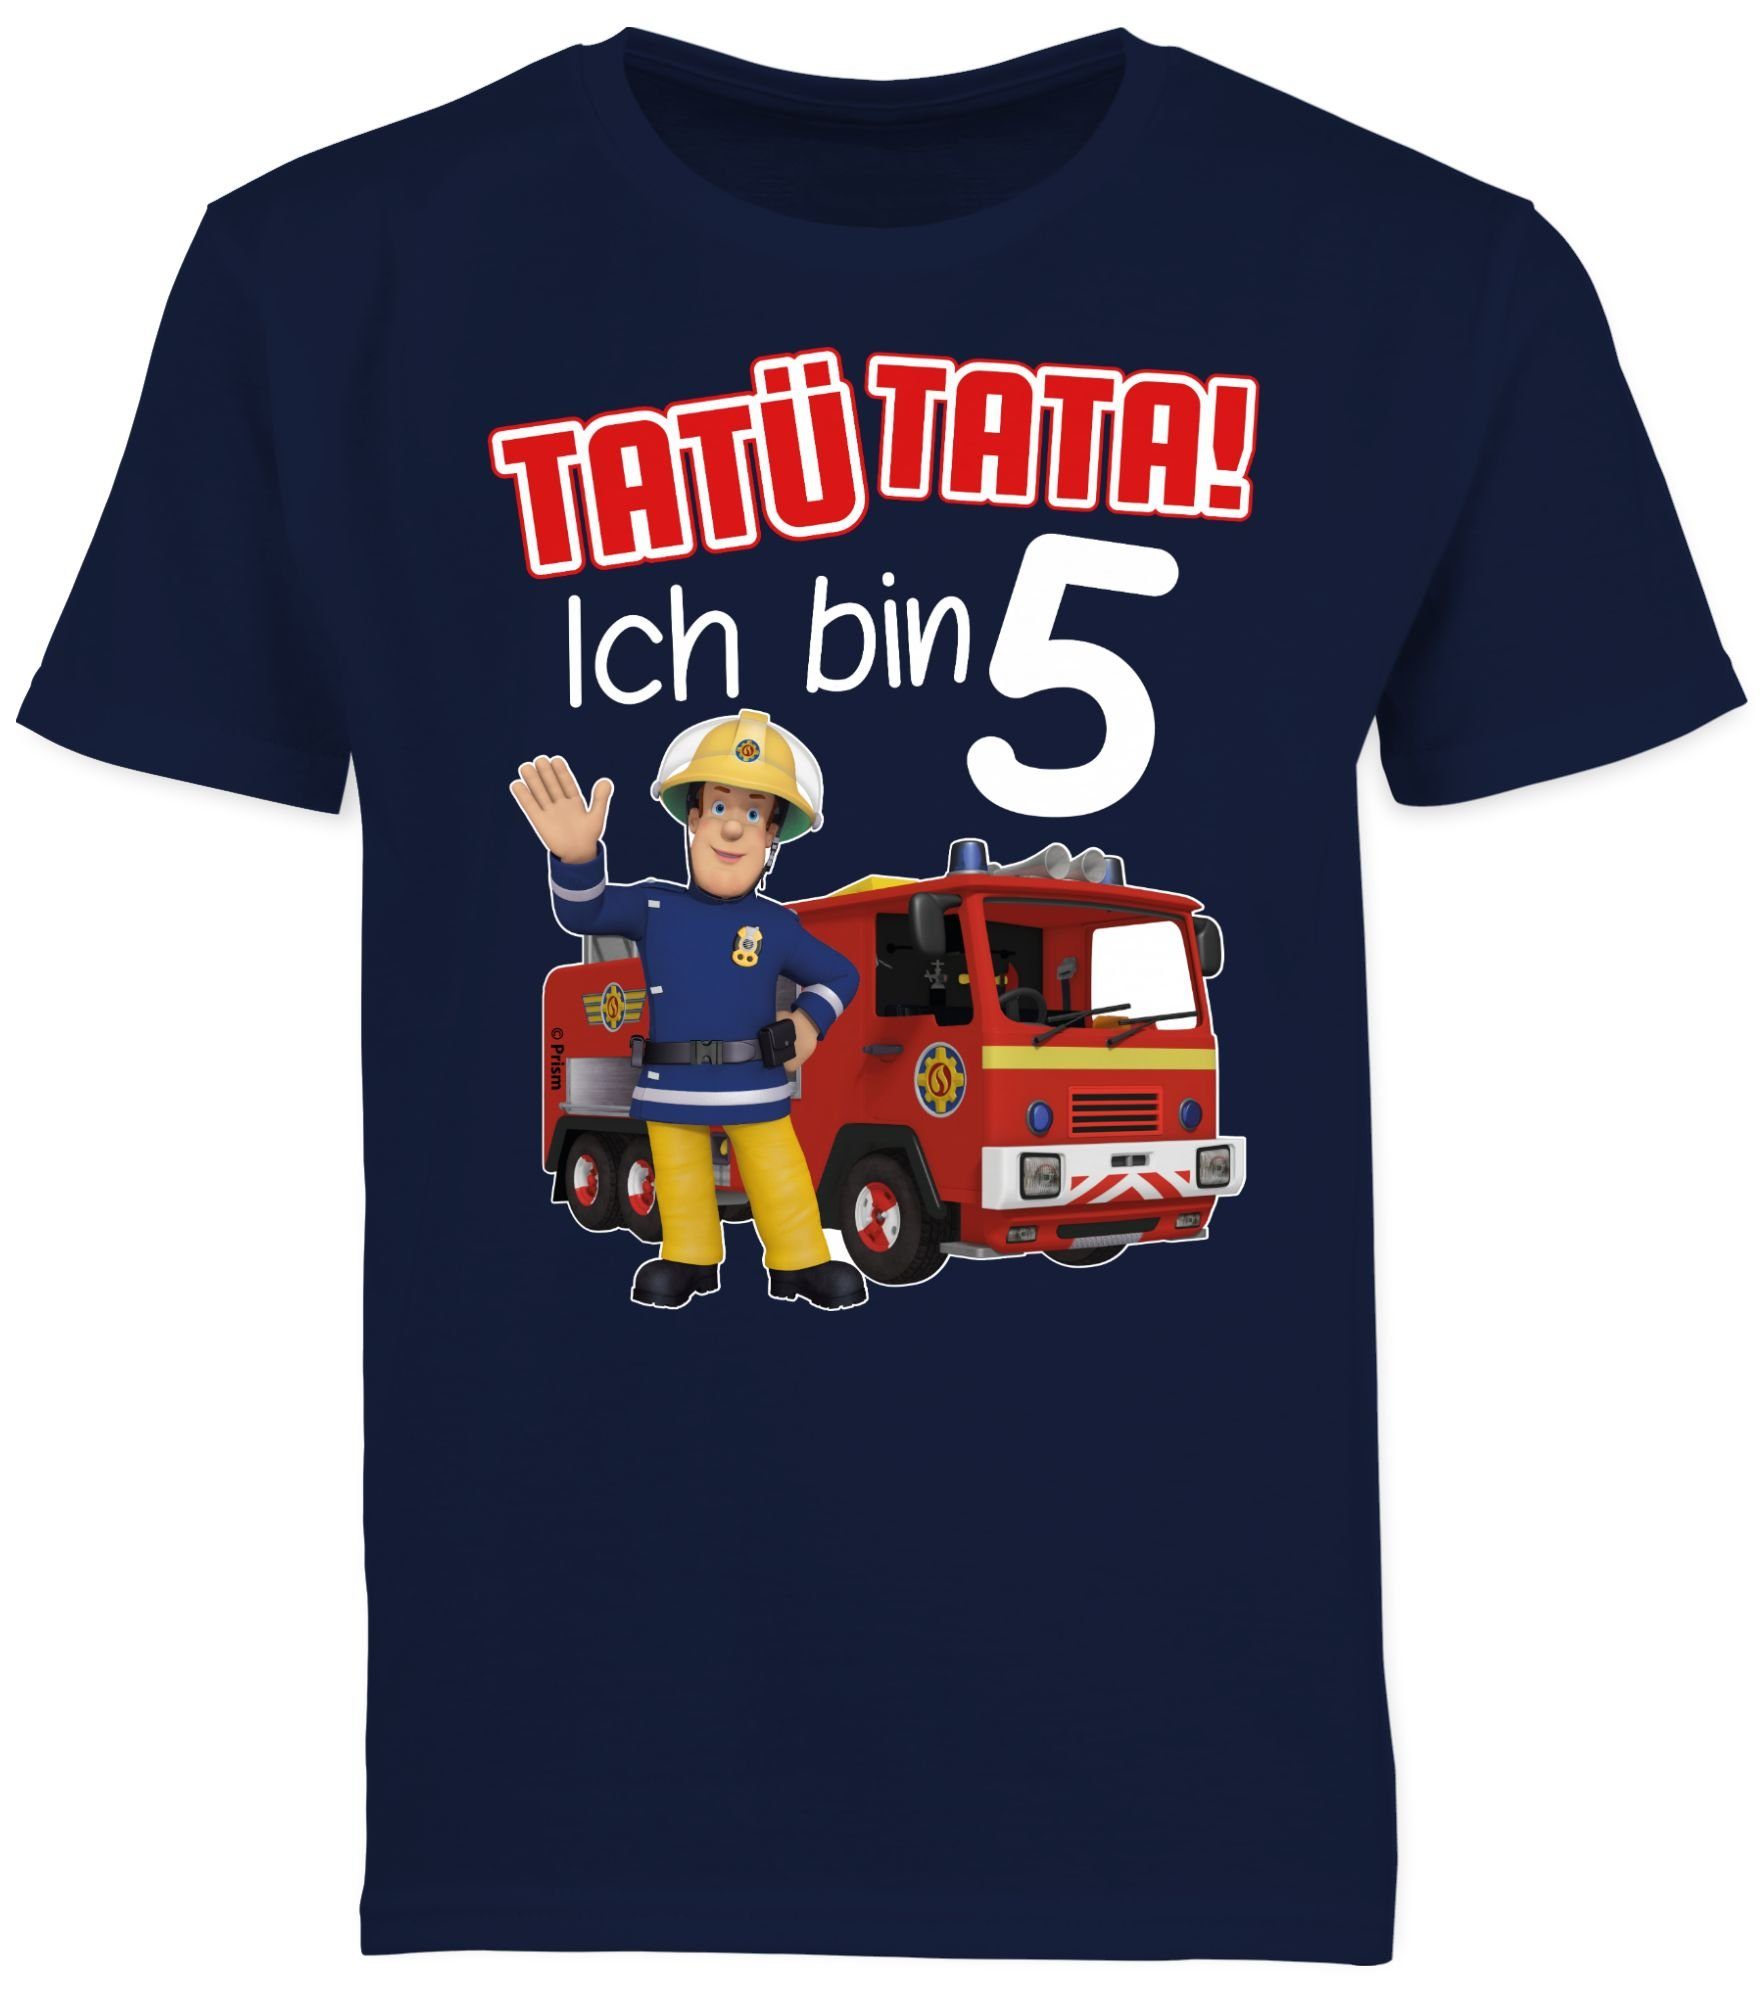 02 Sam Jungen Tata! 5 bin - Feuerwehrmann T-Shirt Ich rot Dunkelblau Tatü Shirtracer